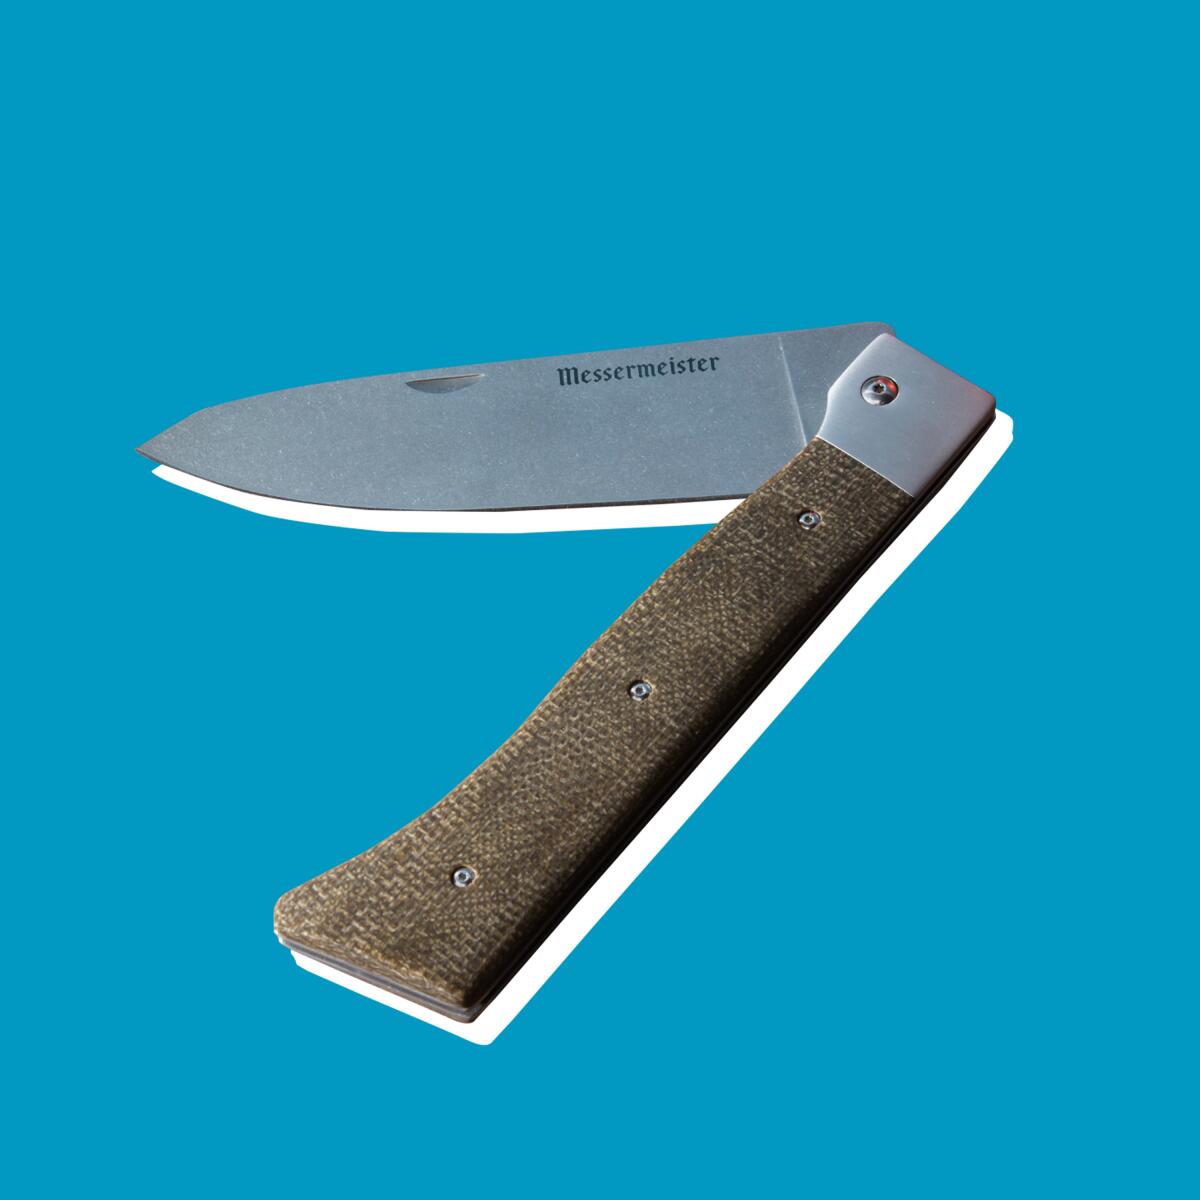 A folding knife